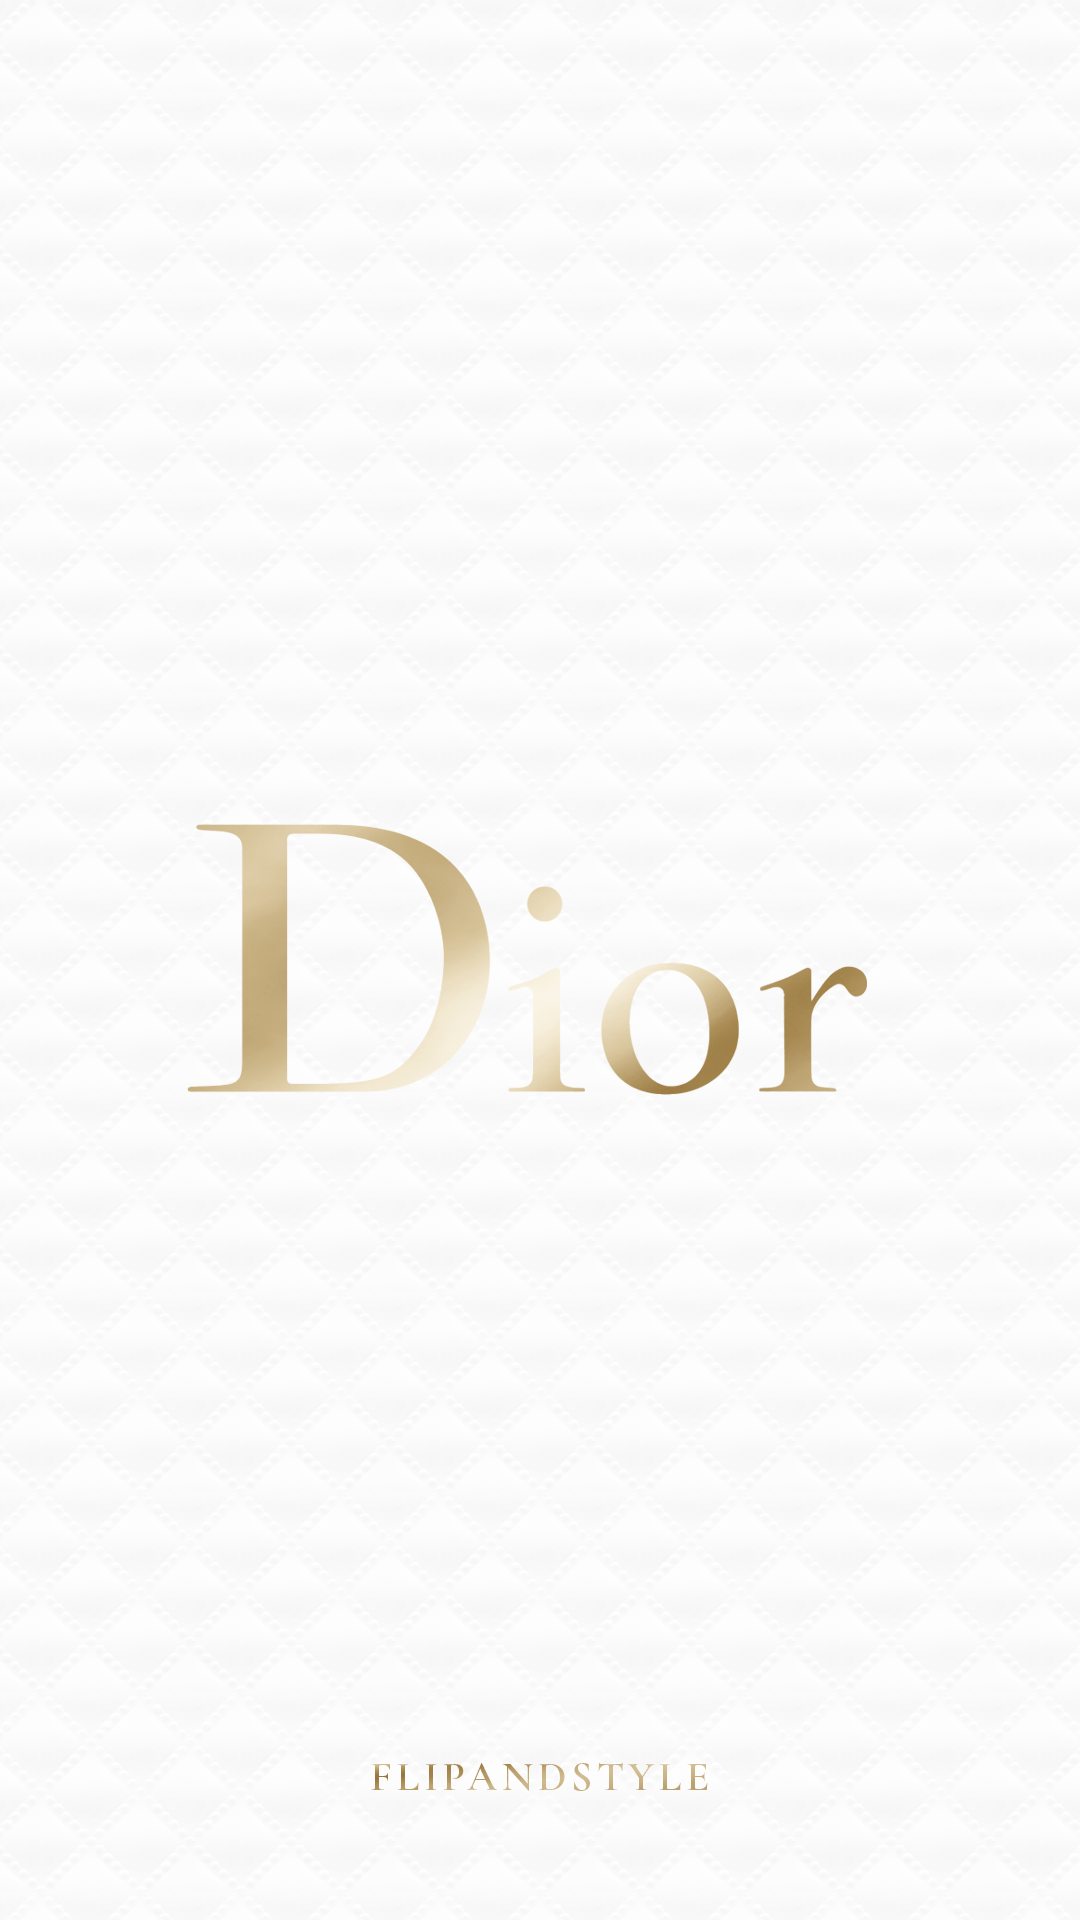 Dior Wallpapers là những hình nền được thiết kế trên chất liệu giấy dán tường. Những hình nền này mang đậm phong cách sang trọng của Dior, giúp cho không gian sống của bạn thêm ấn tượng và nổi bật. Hãy cùng xem những hình nền Dior Wallpapers đẹp mắt và thưởng thức vẻ đẹp đầy tinh tế của nó.